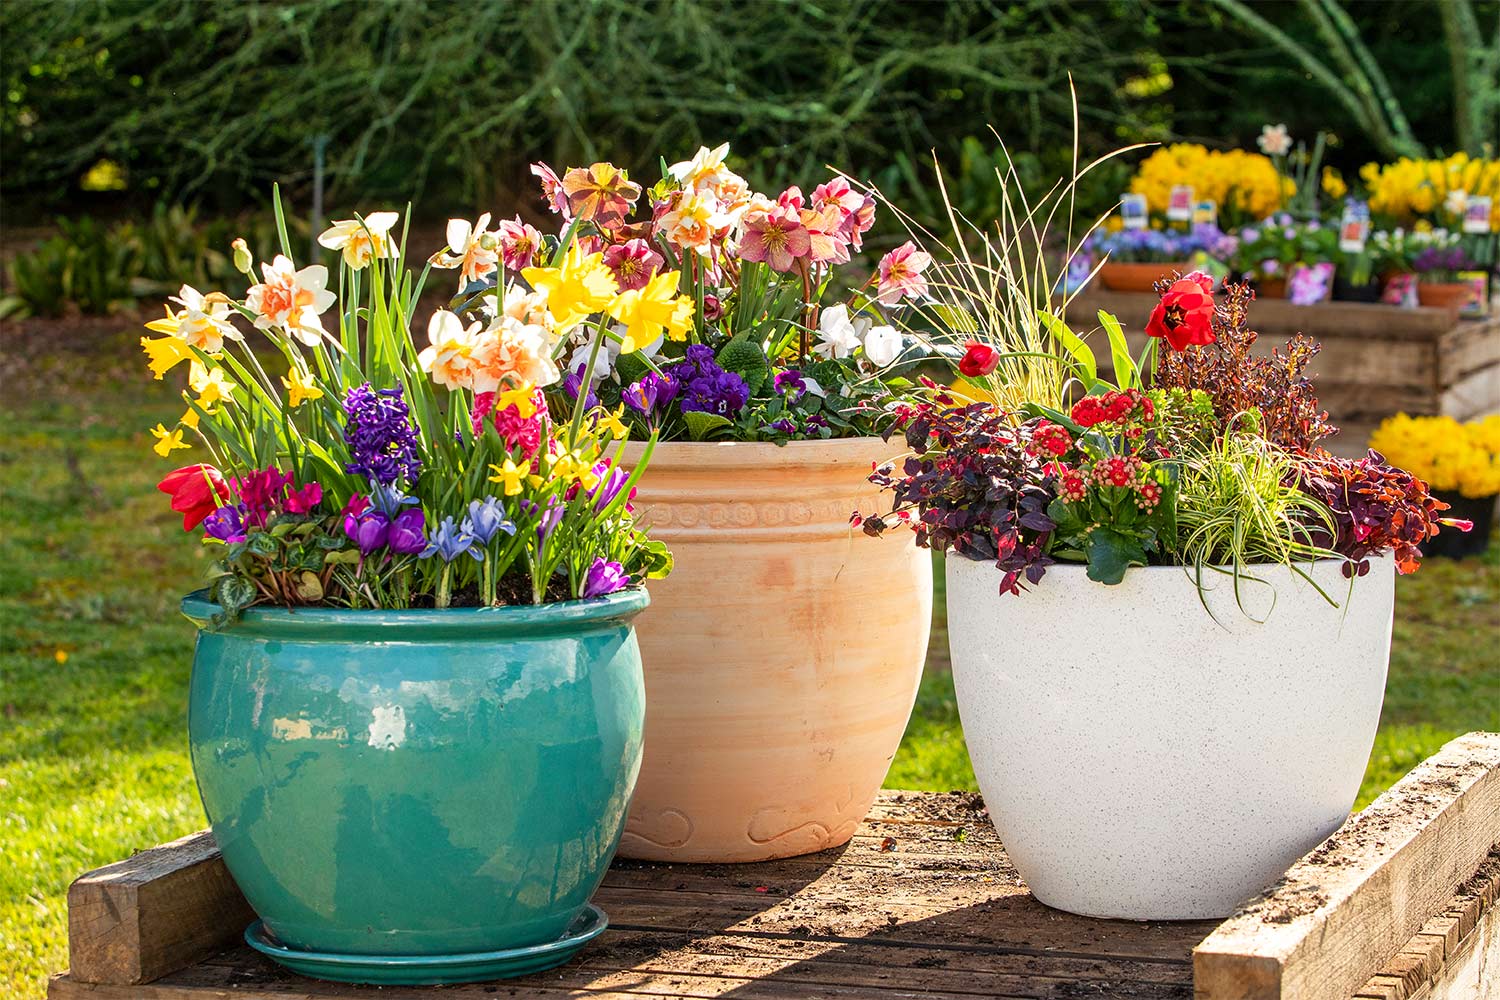 How To Make Outdoor Flower Pot Arrangements